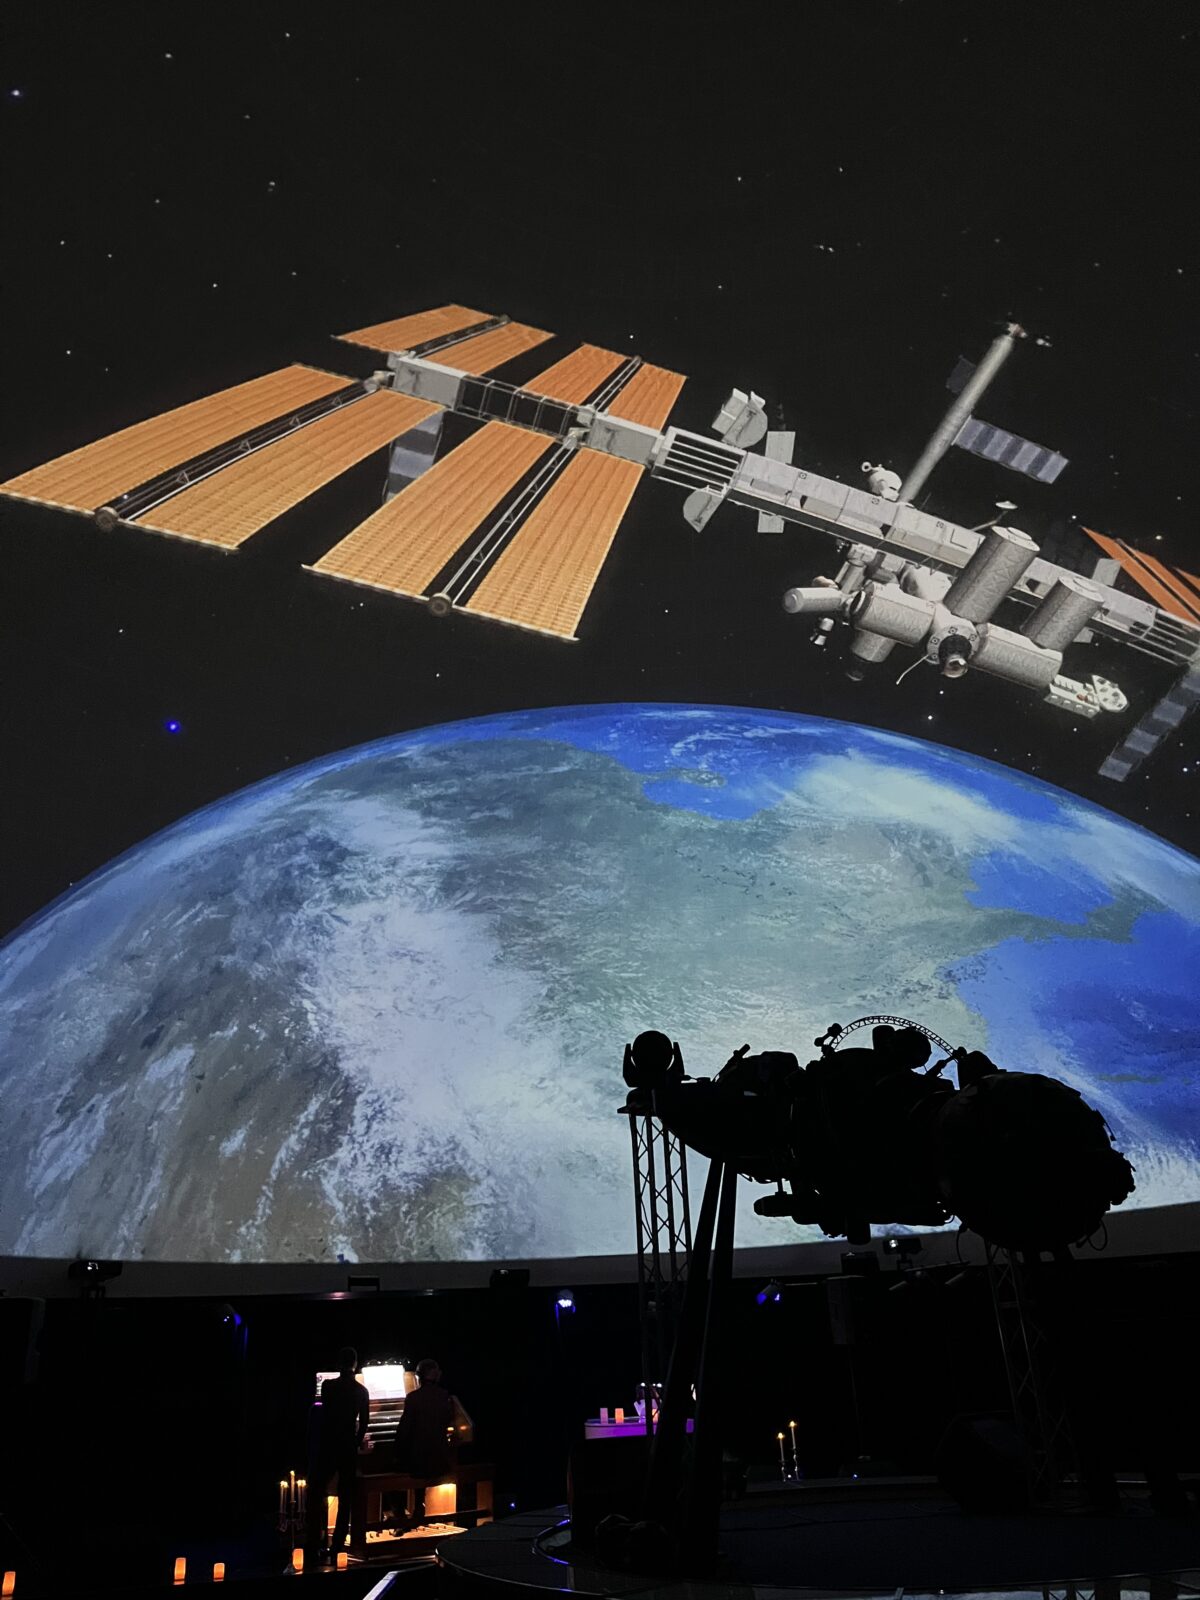 Відеоряд у зоряній залі київського планетарію під час вечірнього шоу: планета і космічний апарат